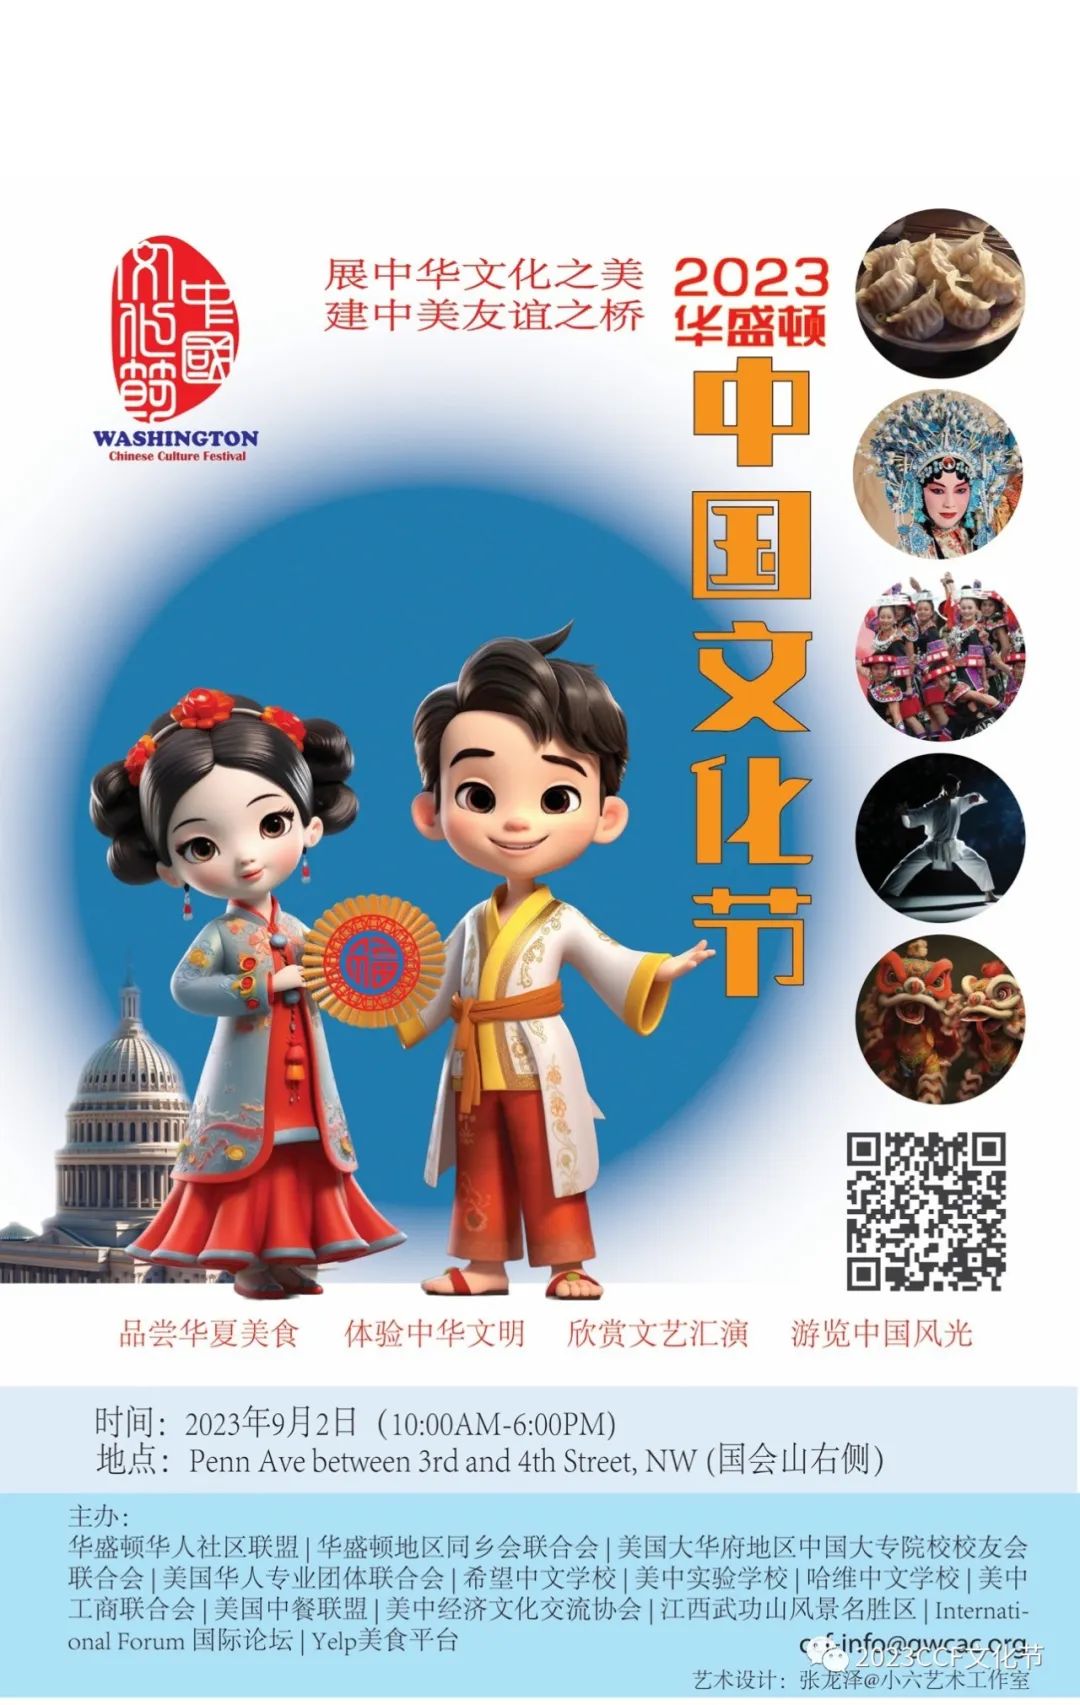 国风盛宴即将开启，与中国传统文化来一次浪漫邂逅吧——9/2华盛顿中国文化节文化体验/游行介绍之三